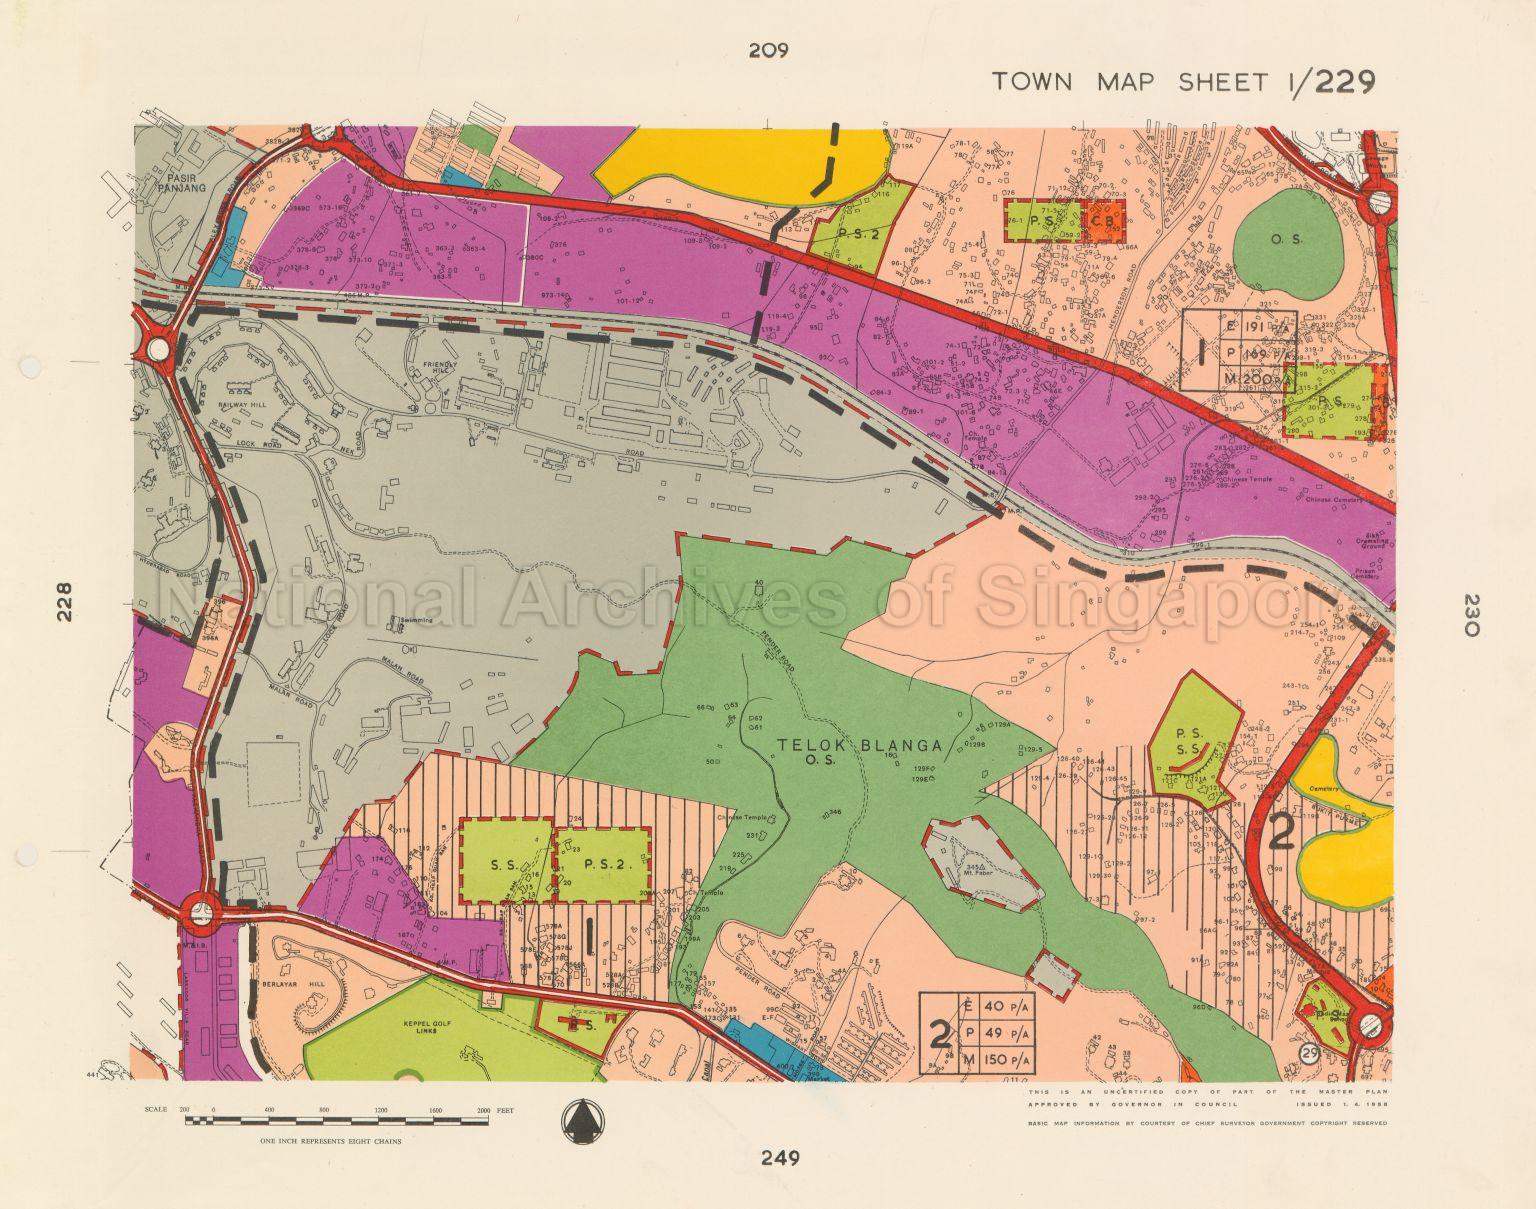 1958 Master Plan: Town Map Sheet 1/229